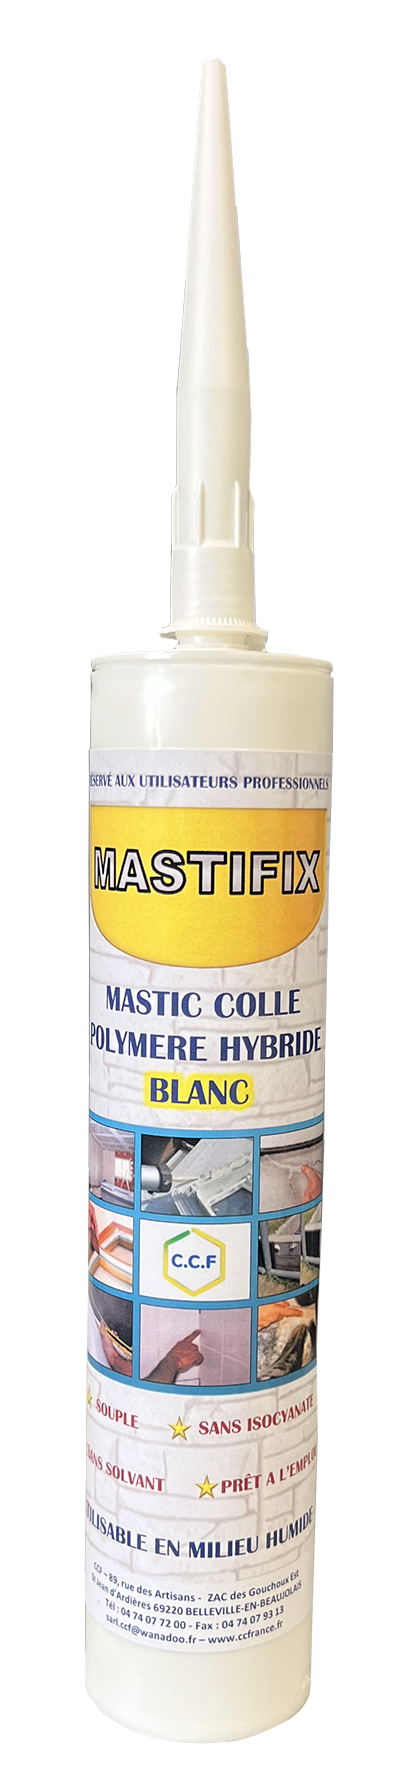 MASTIFIX Mastic et colle à base de polymère hybride